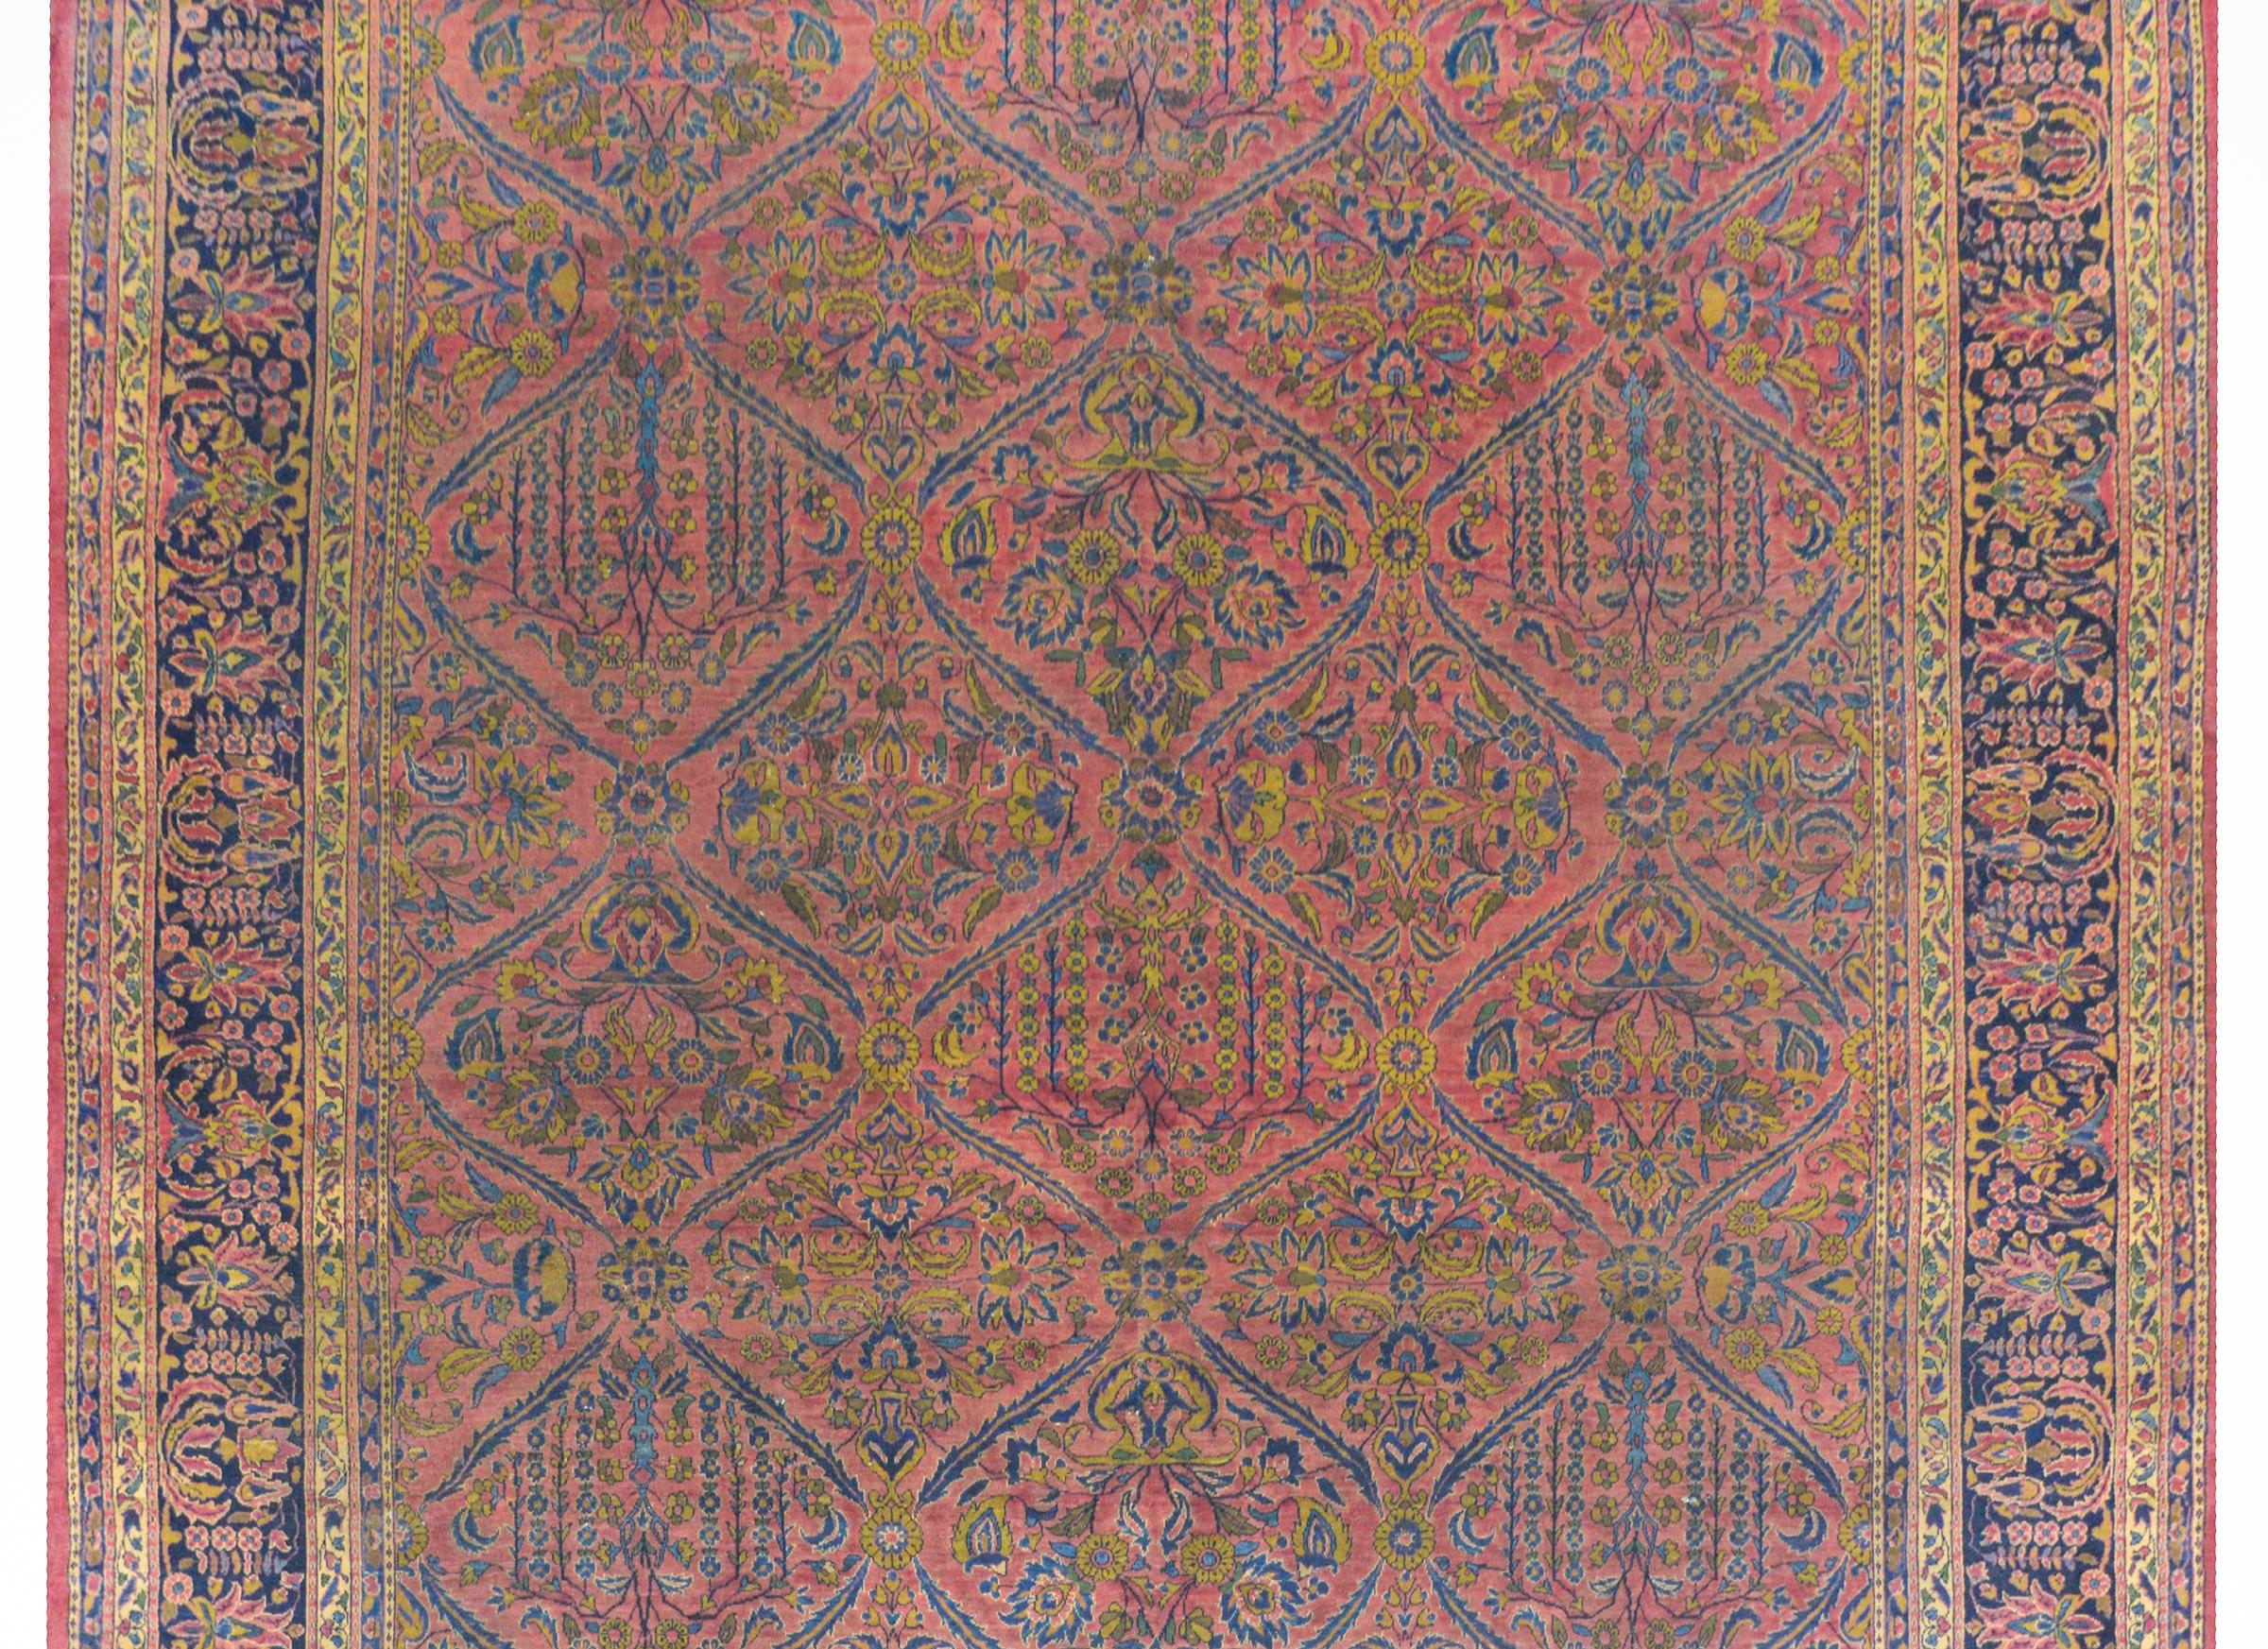 Remarquable tapis sarouk persan du début du XXe siècle, avec un fantastique motif de treillis contenant des saules pleureurs, des fleurs en pot et des vignes, le tout tissé en indigo clair et foncé, et en or sur un fond couleur canneberge. La